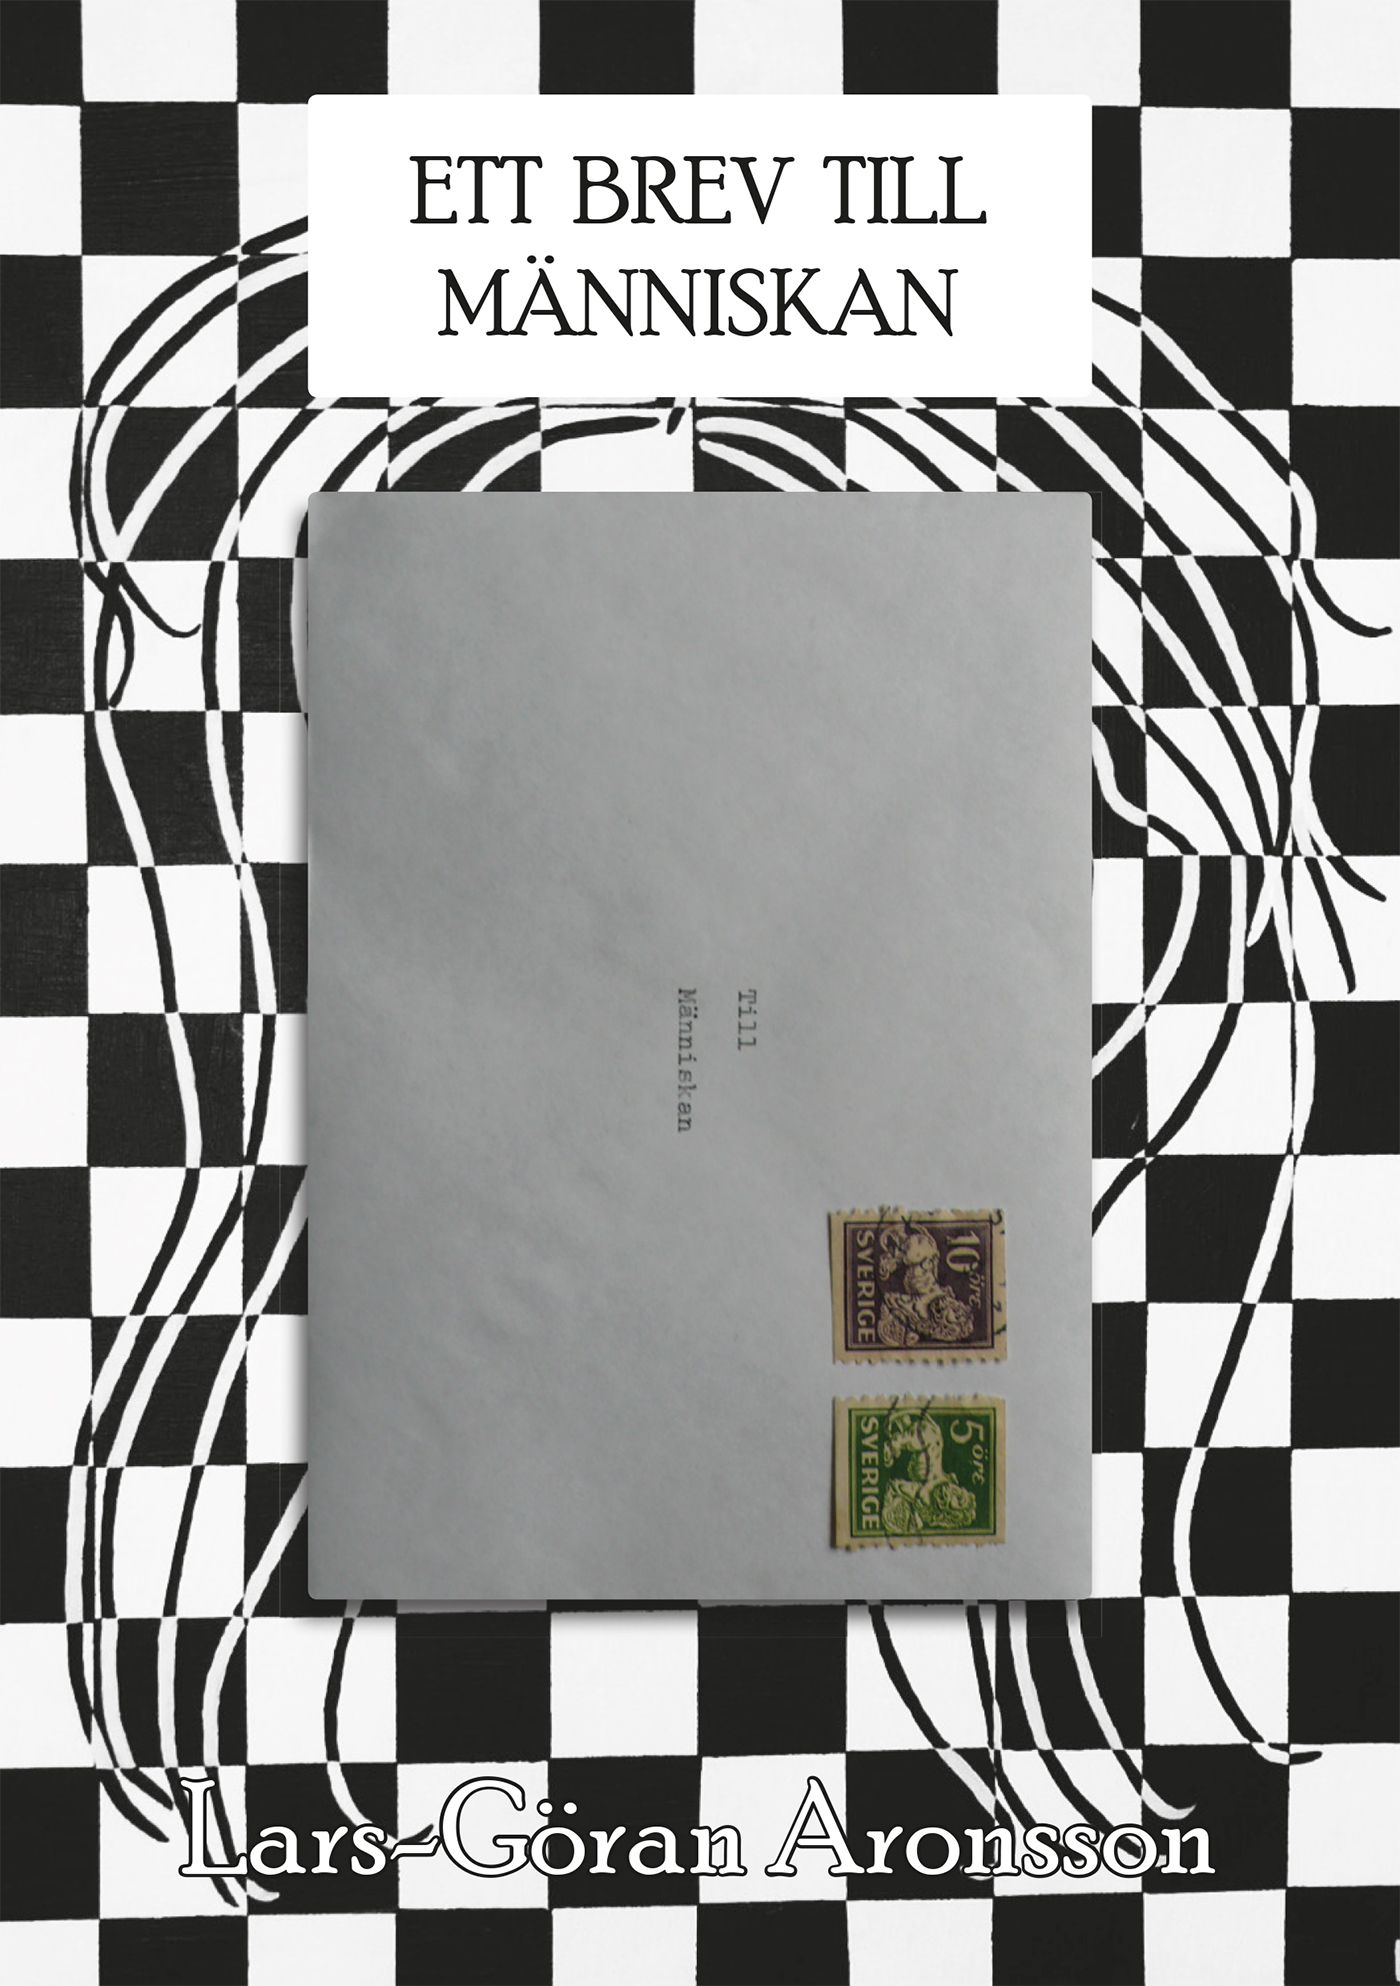 Ett brev till människan, eBook by Lars-Göran Aronsson